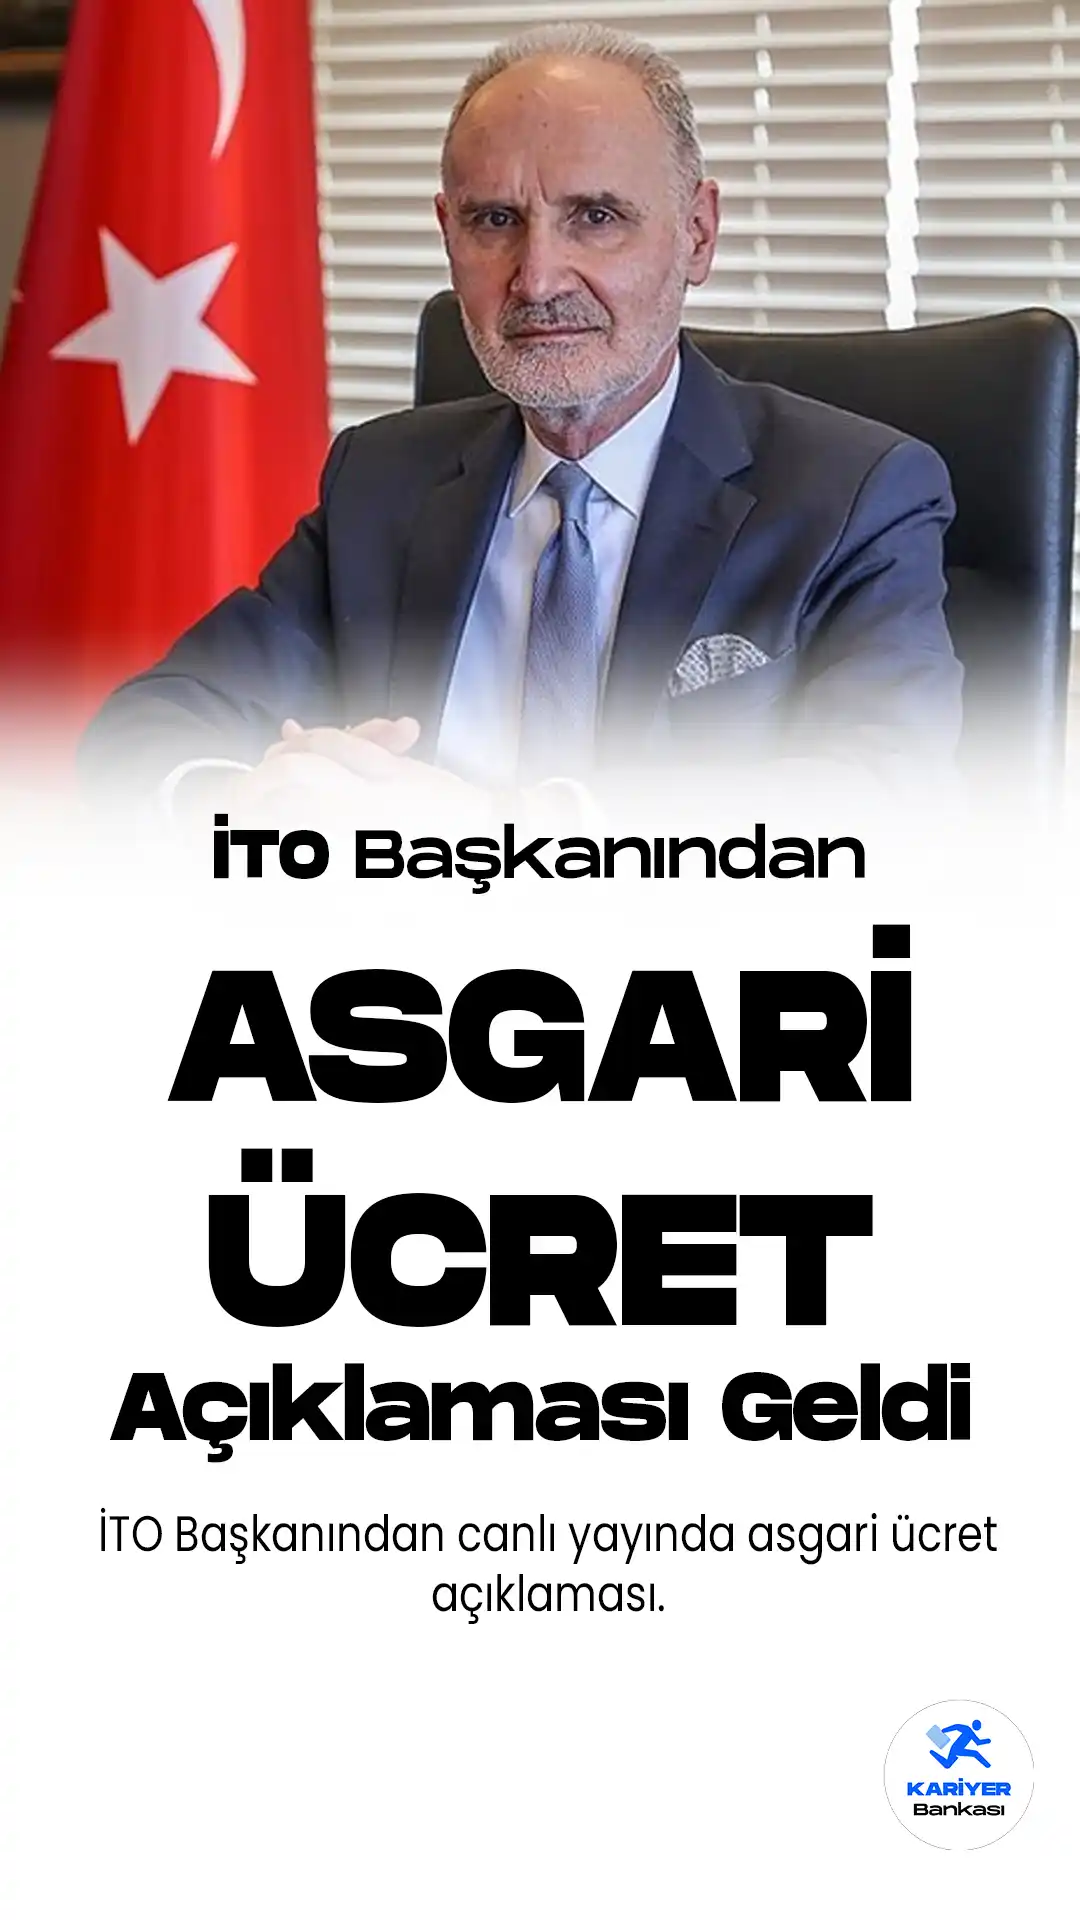 İstanbul Ticaret Odası Başkanı Şekip Avdagiç, asgari ücretin Türk lirası bazında güncellenmesi gerektiğini söyledi.